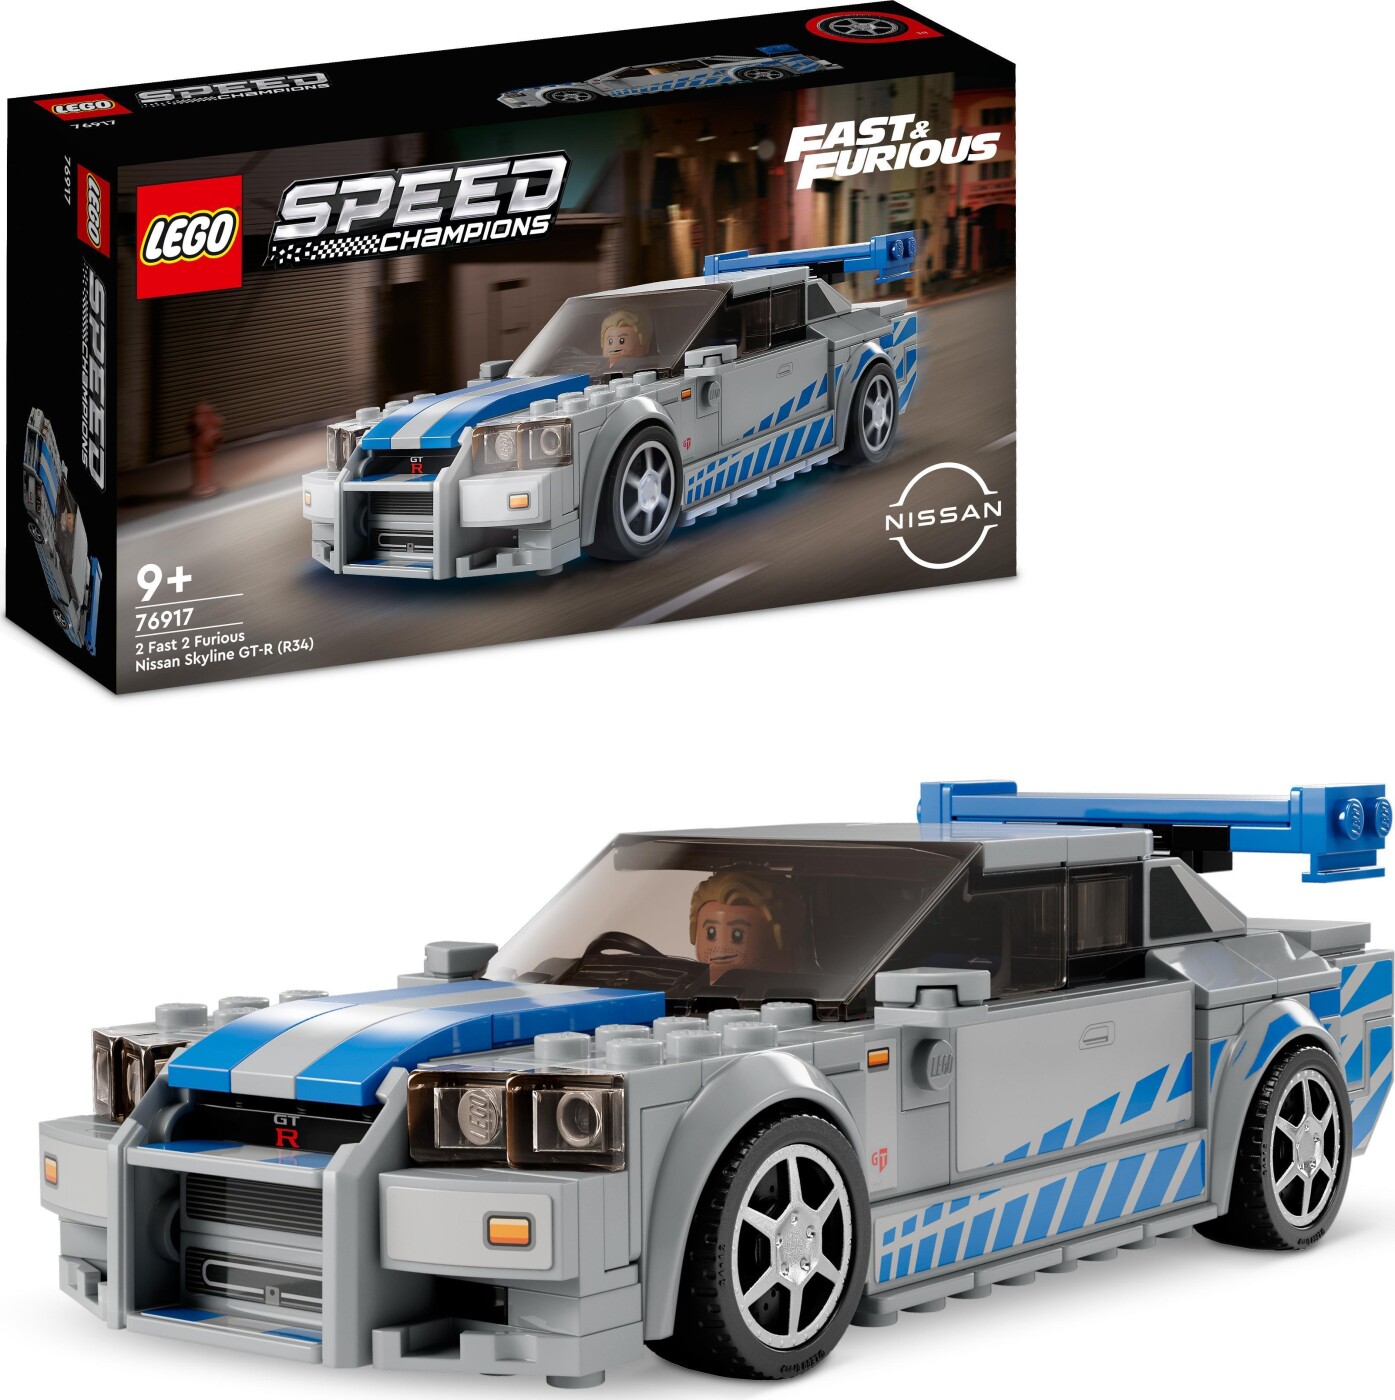 Billede af Lego Speed Champions - 2 Fast 2 Furious Nissan Skyline - 76917 hos Gucca.dk